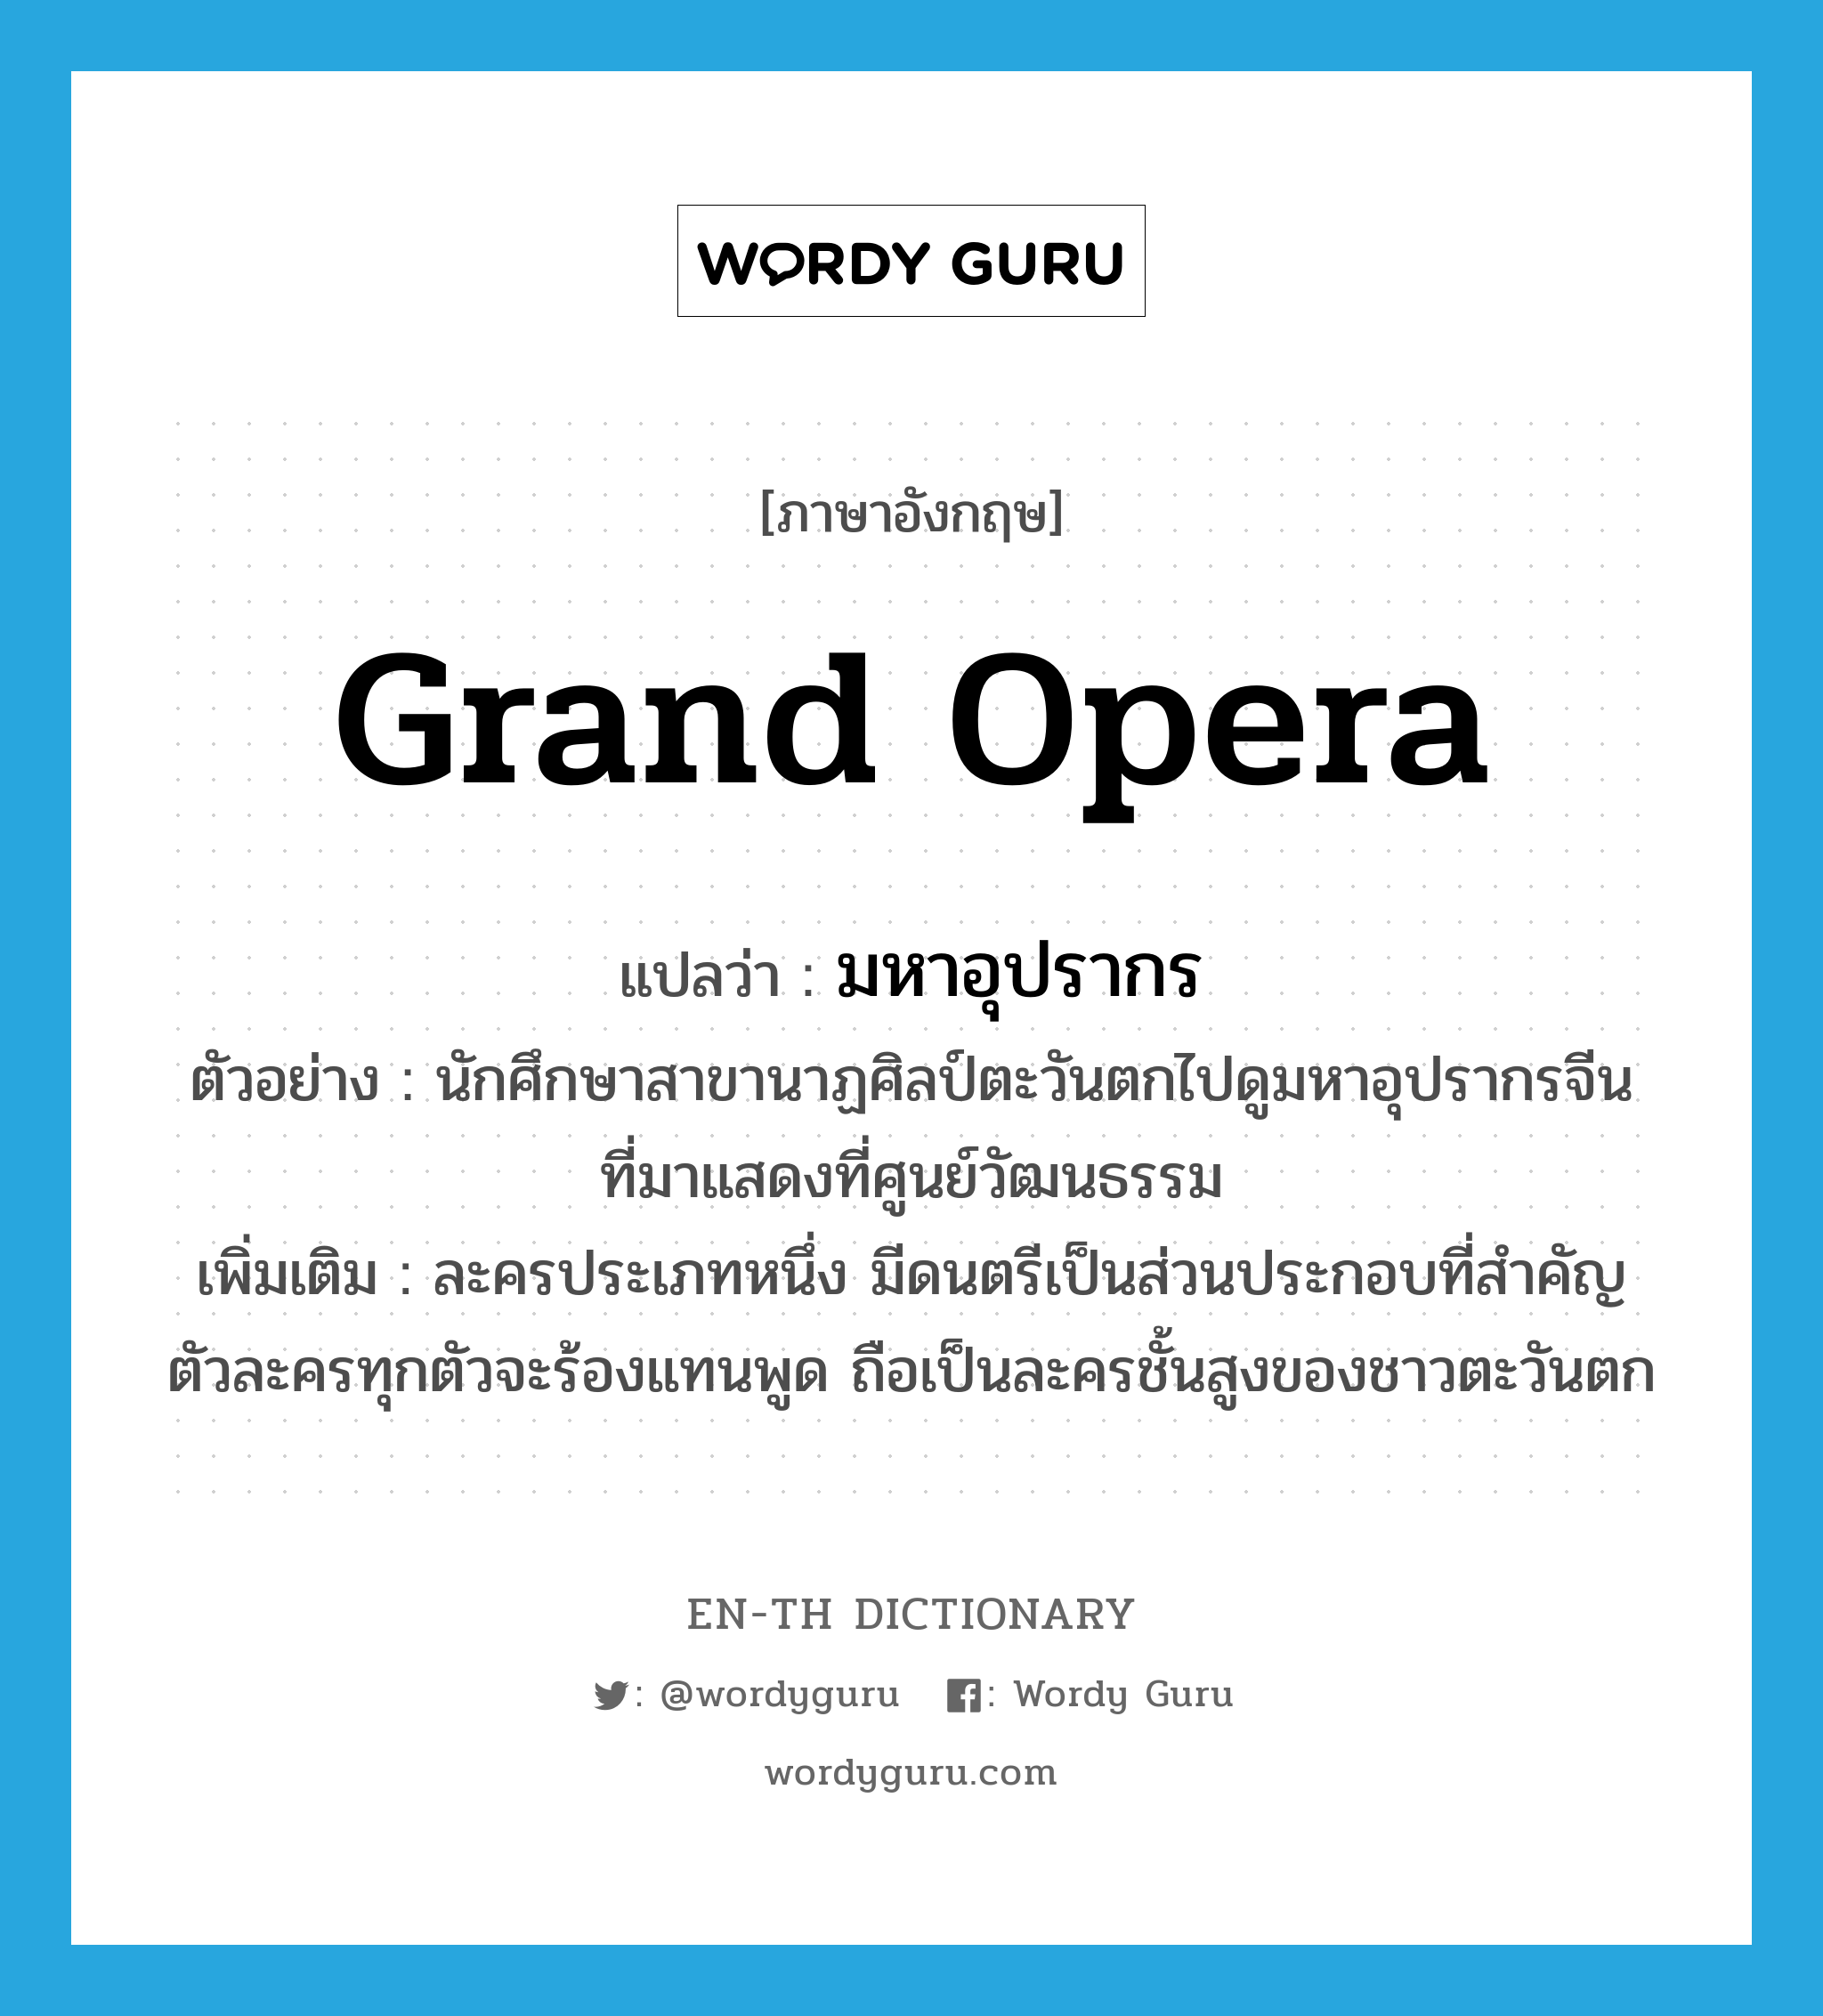 grand opera แปลว่า?, คำศัพท์ภาษาอังกฤษ grand opera แปลว่า มหาอุปรากร ประเภท N ตัวอย่าง นักศึกษาสาขานาฏศิลป์ตะวันตกไปดูมหาอุปรากรจีนที่มาแสดงที่ศูนย์วัฒนธรรม เพิ่มเติม ละครประเภทหนึ่ง มีดนตรีเป็นส่วนประกอบที่สำคัญ ตัวละครทุกตัวจะร้องแทนพูด ถือเป็นละครชั้นสูงของชาวตะวันตก หมวด N